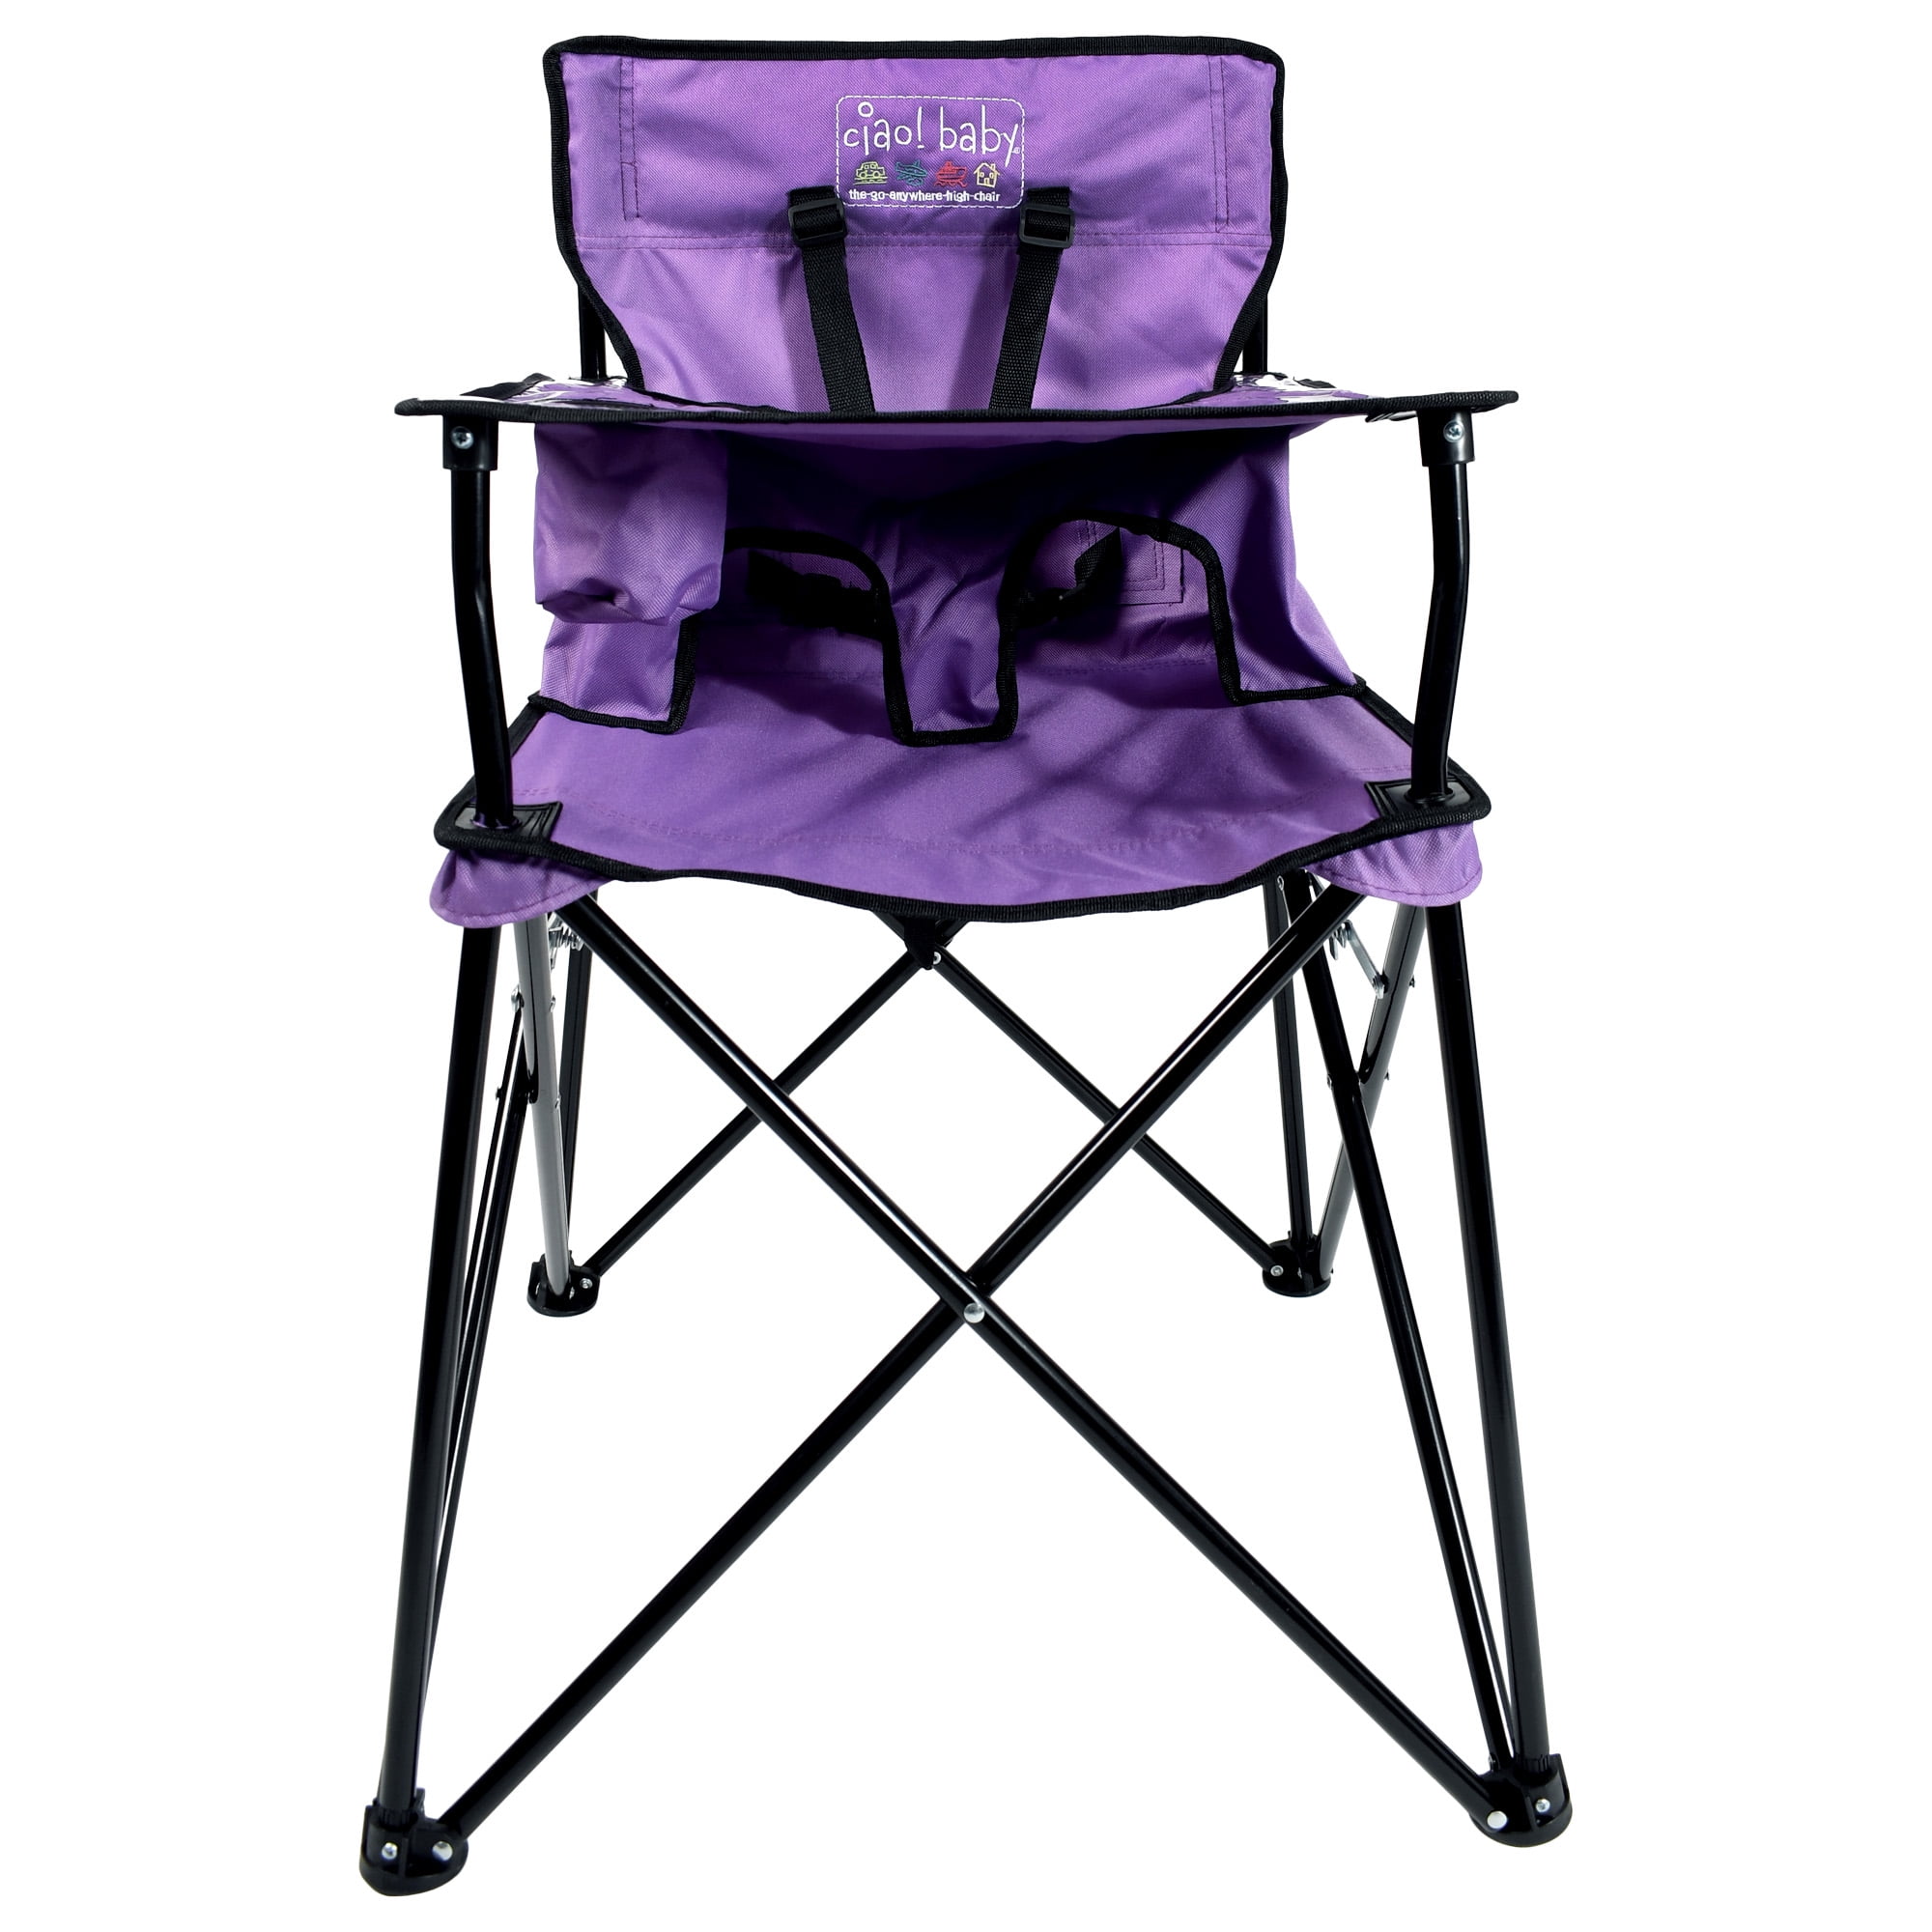 purple high chair